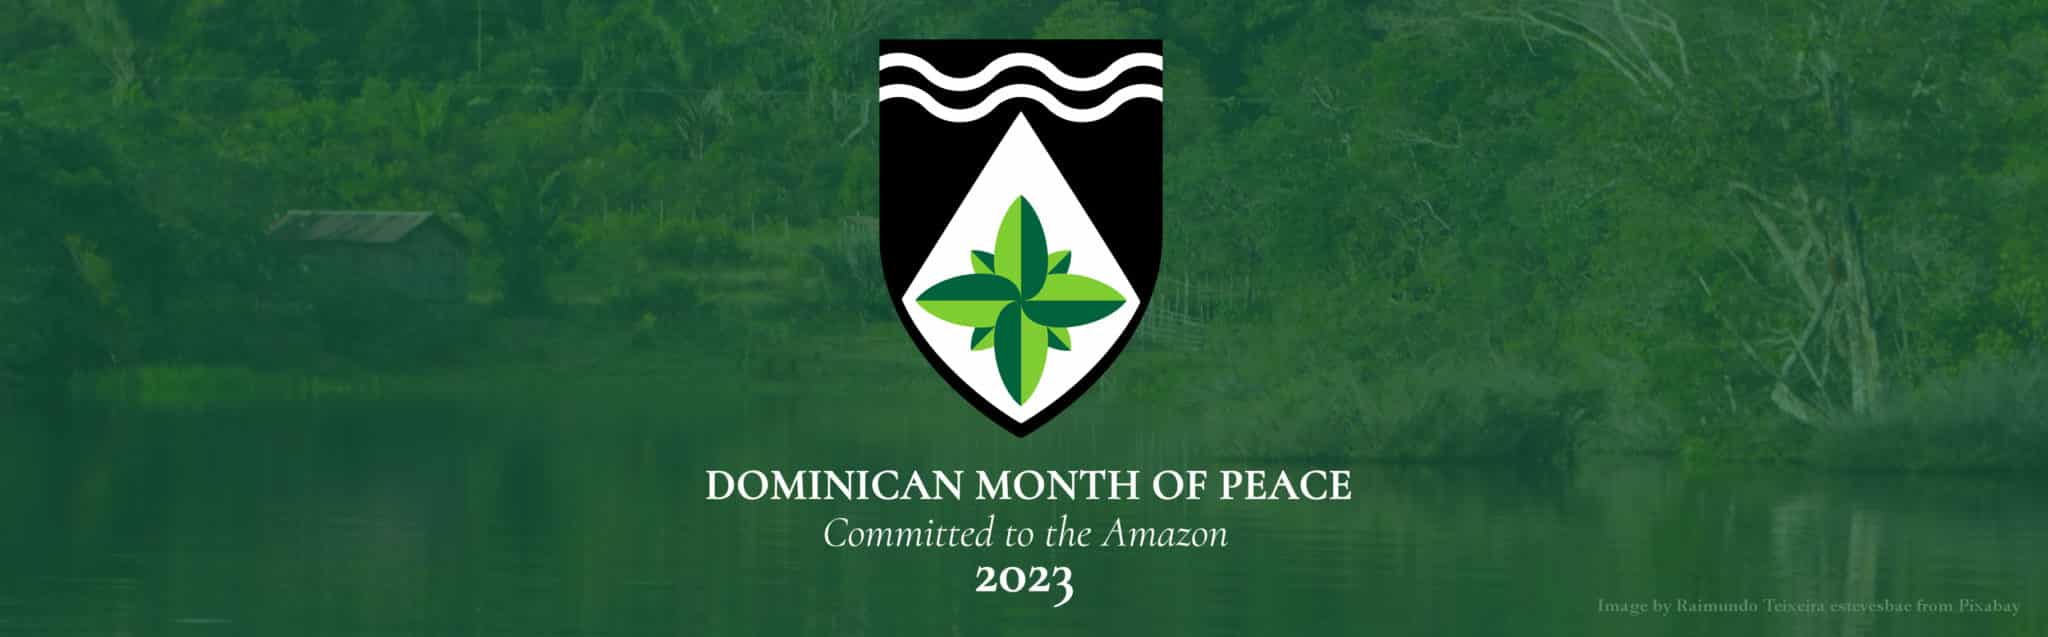 DominicanMonthPeaceAmazonia2023 Crop2